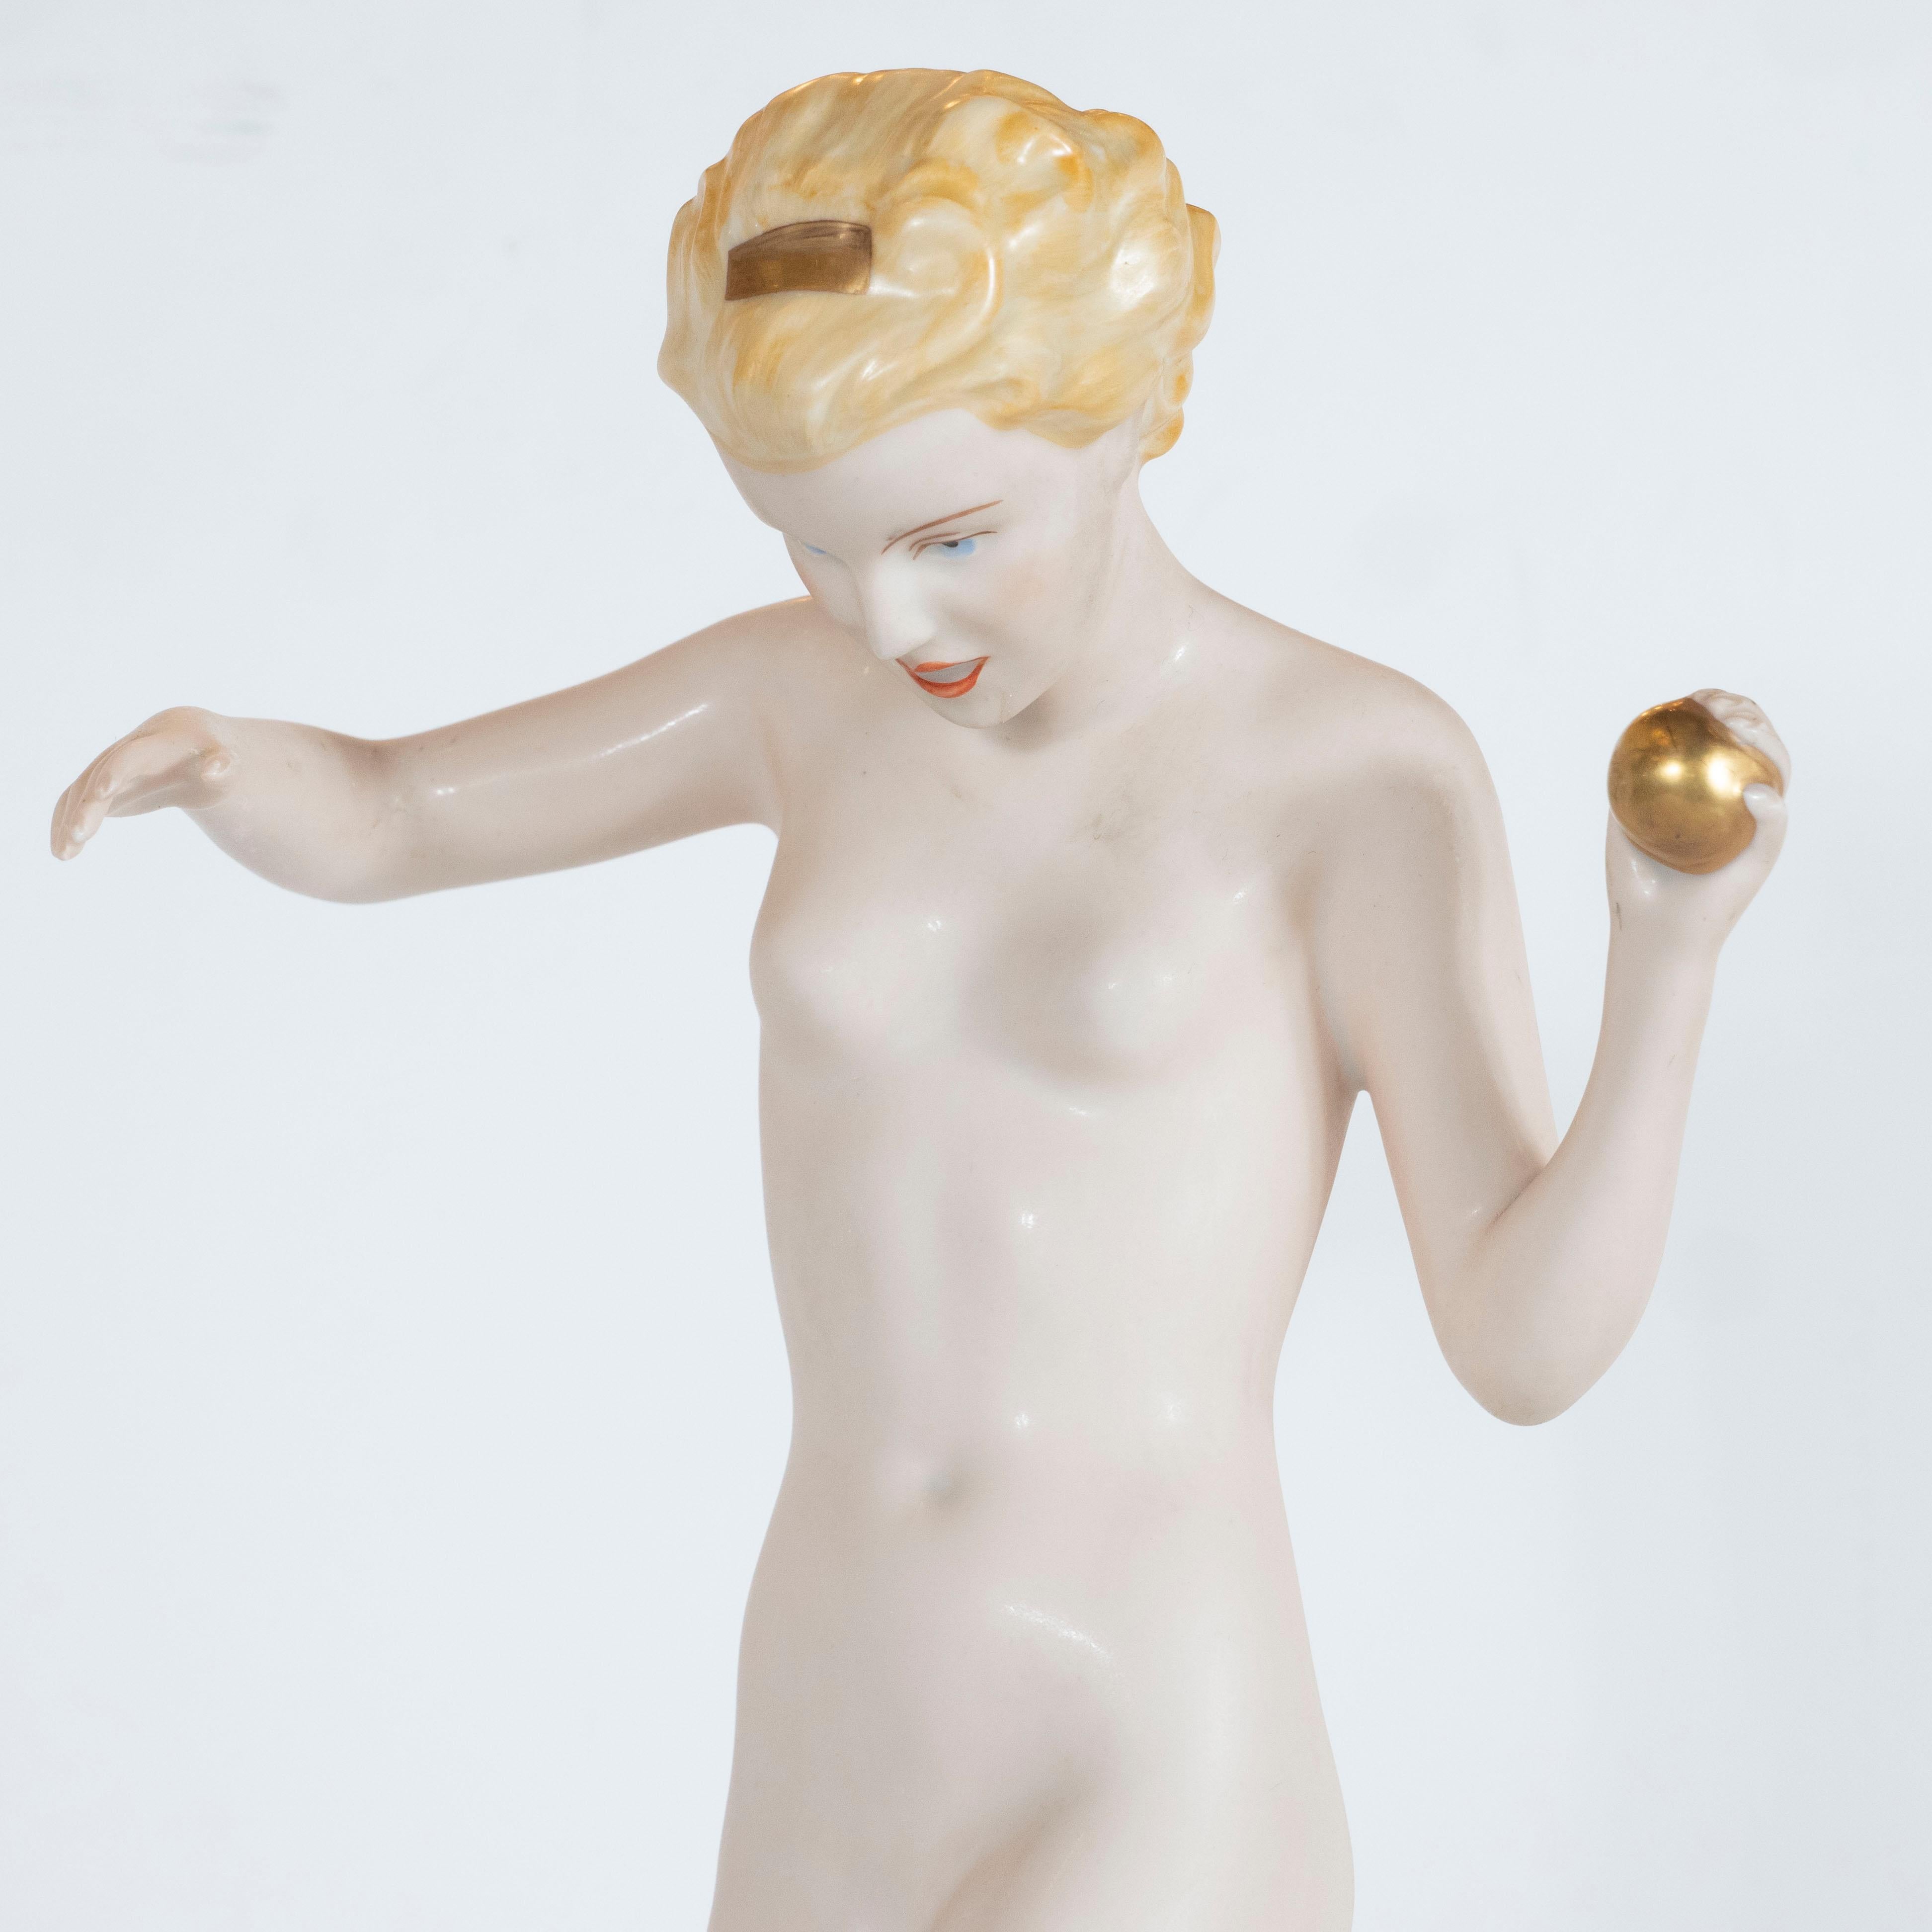 Cette élégante sculpture Art déco a été réalisée en République tchèque - réputée pour produire certains des meilleurs produits en porcelaine, en argent et en verre du monde à cette époque - vers 1930. Il représente une femme nue aux cheveux blonds,